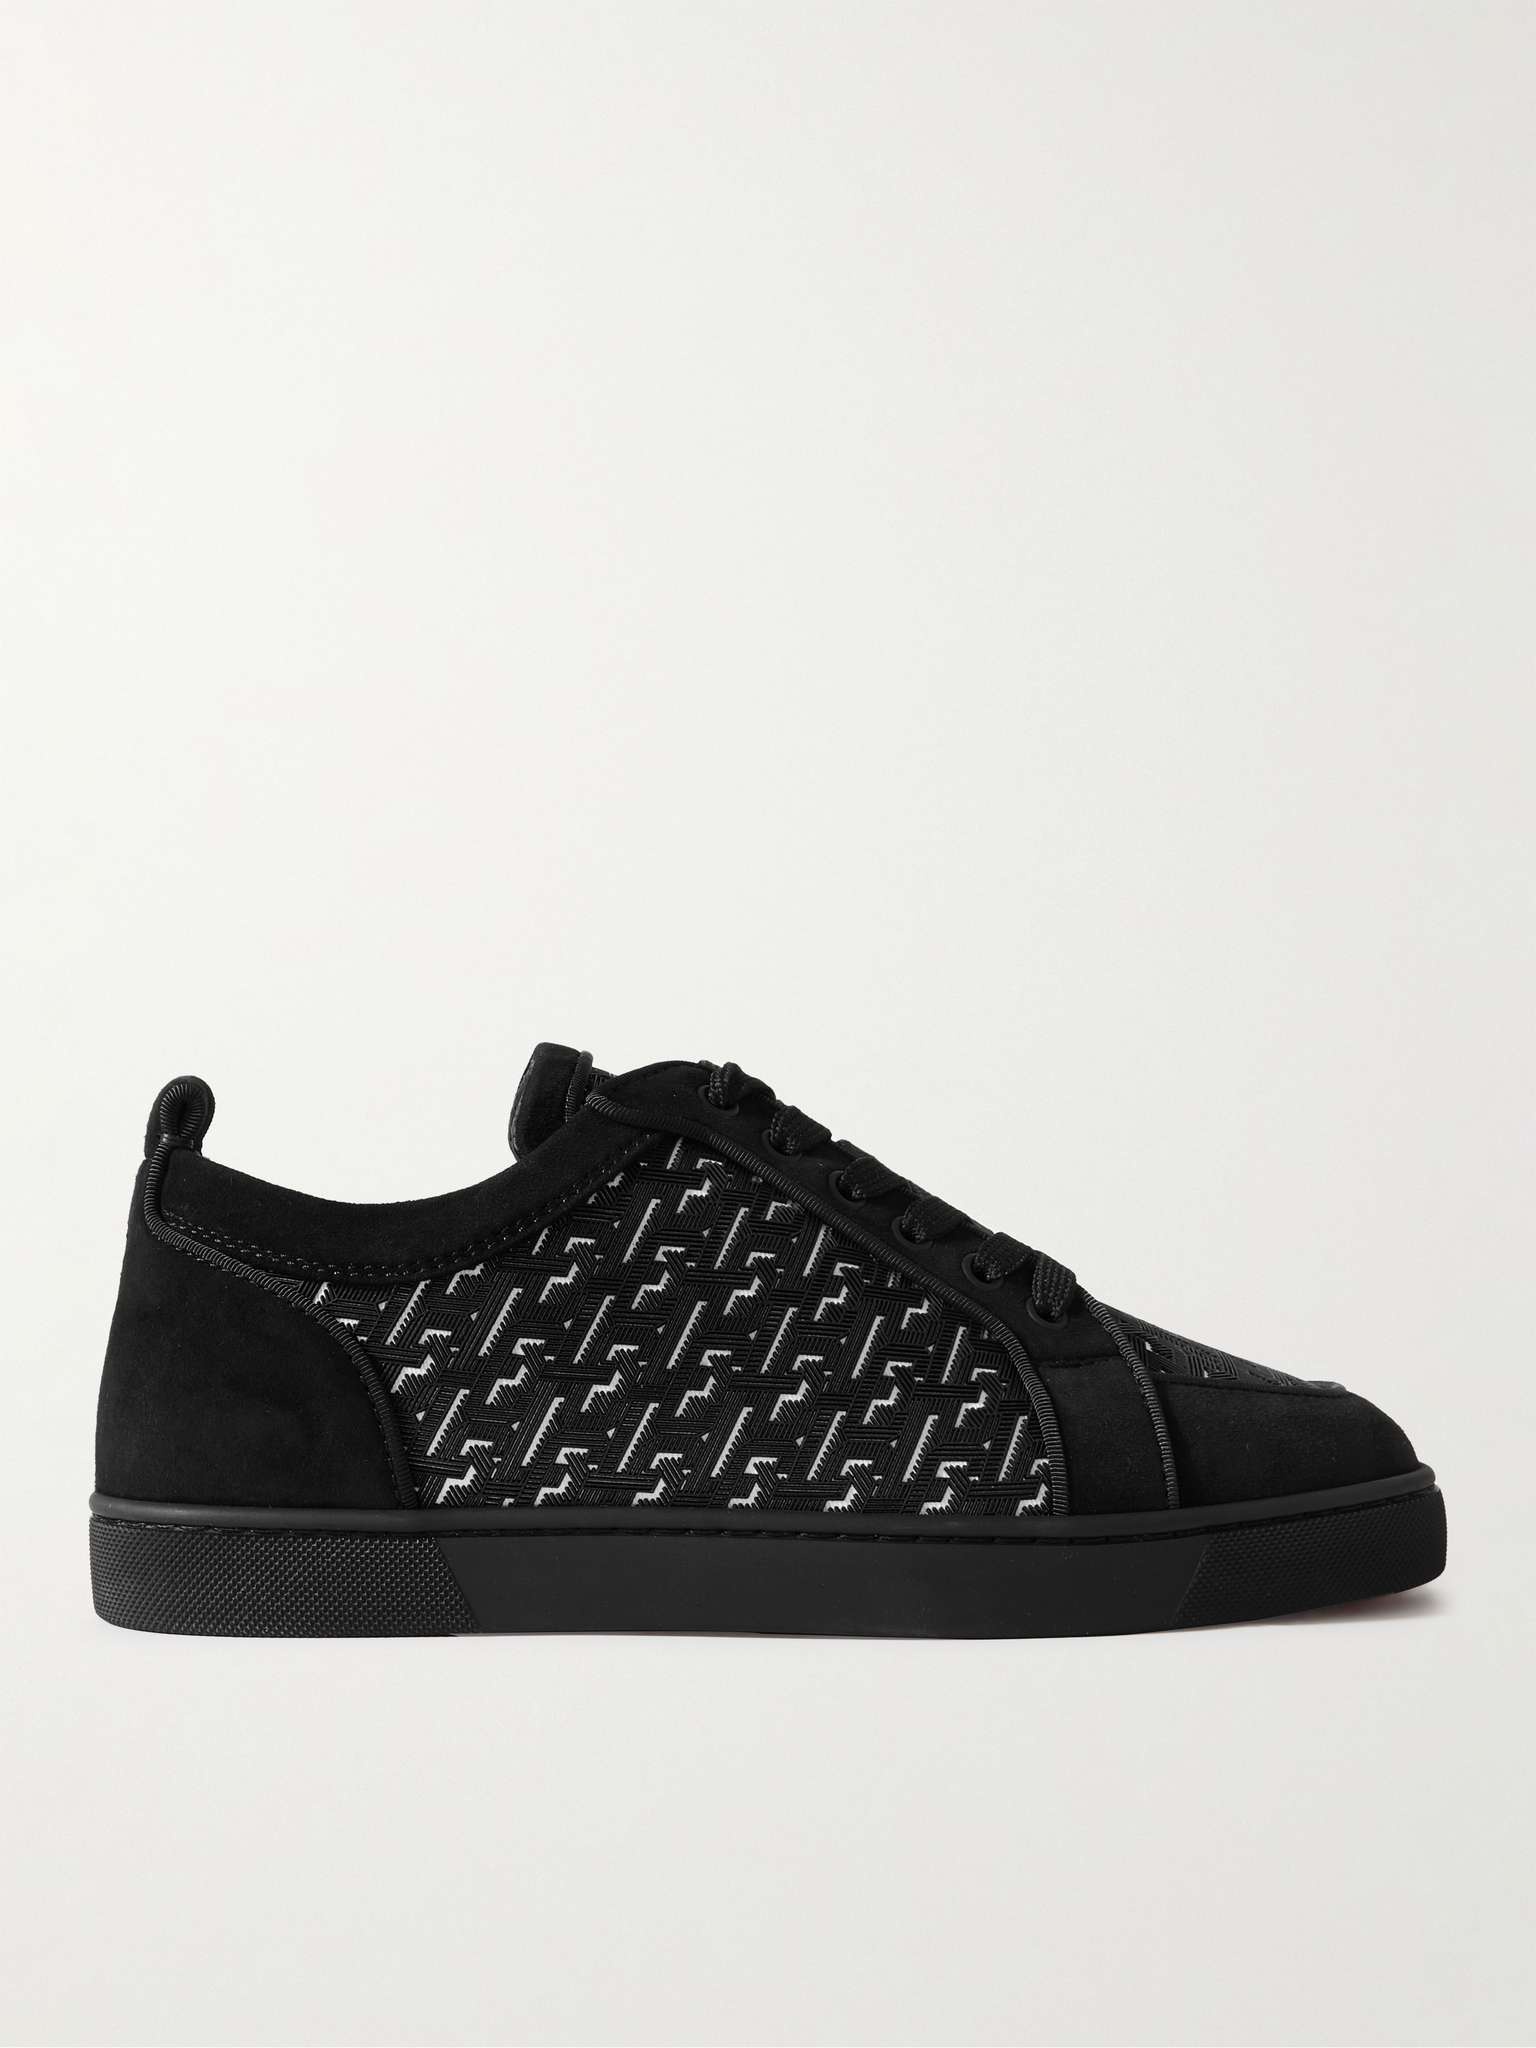 Louis Vuitton Brown/Black Monogram Canvas Lace Up Sneakers Size 41.5 Louis  Vuitton